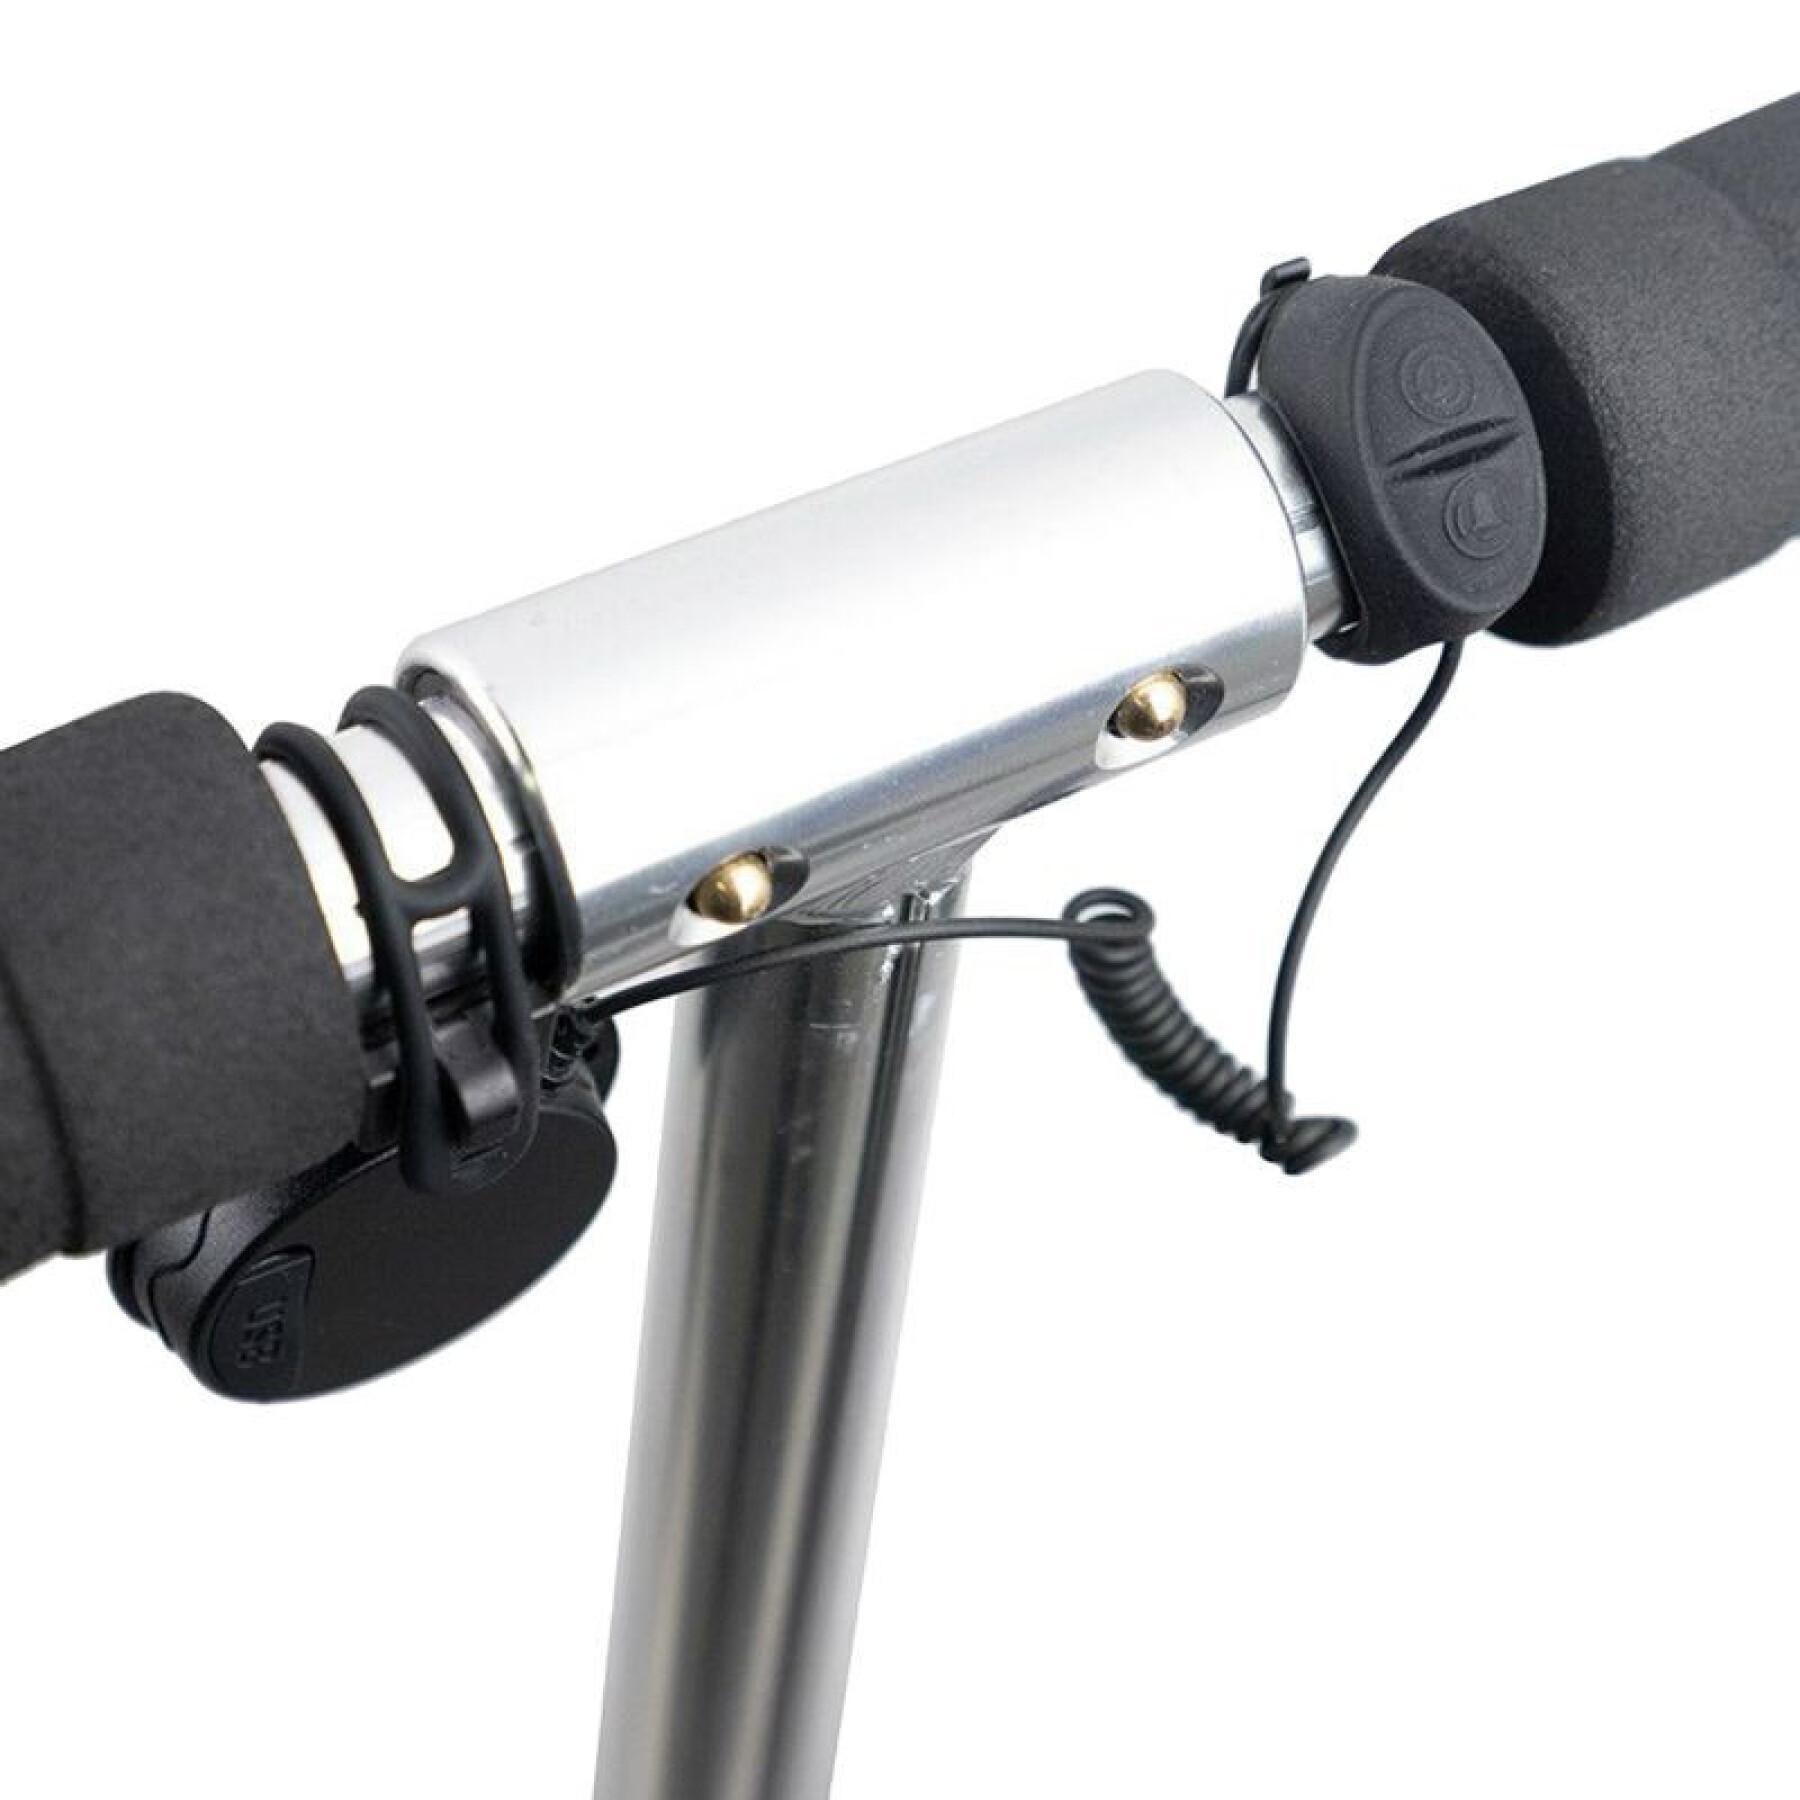 Sino - buzina de bicicleta - scooter electrónica recarregável usb - 4 sons 110-120 decibéis criança P2R